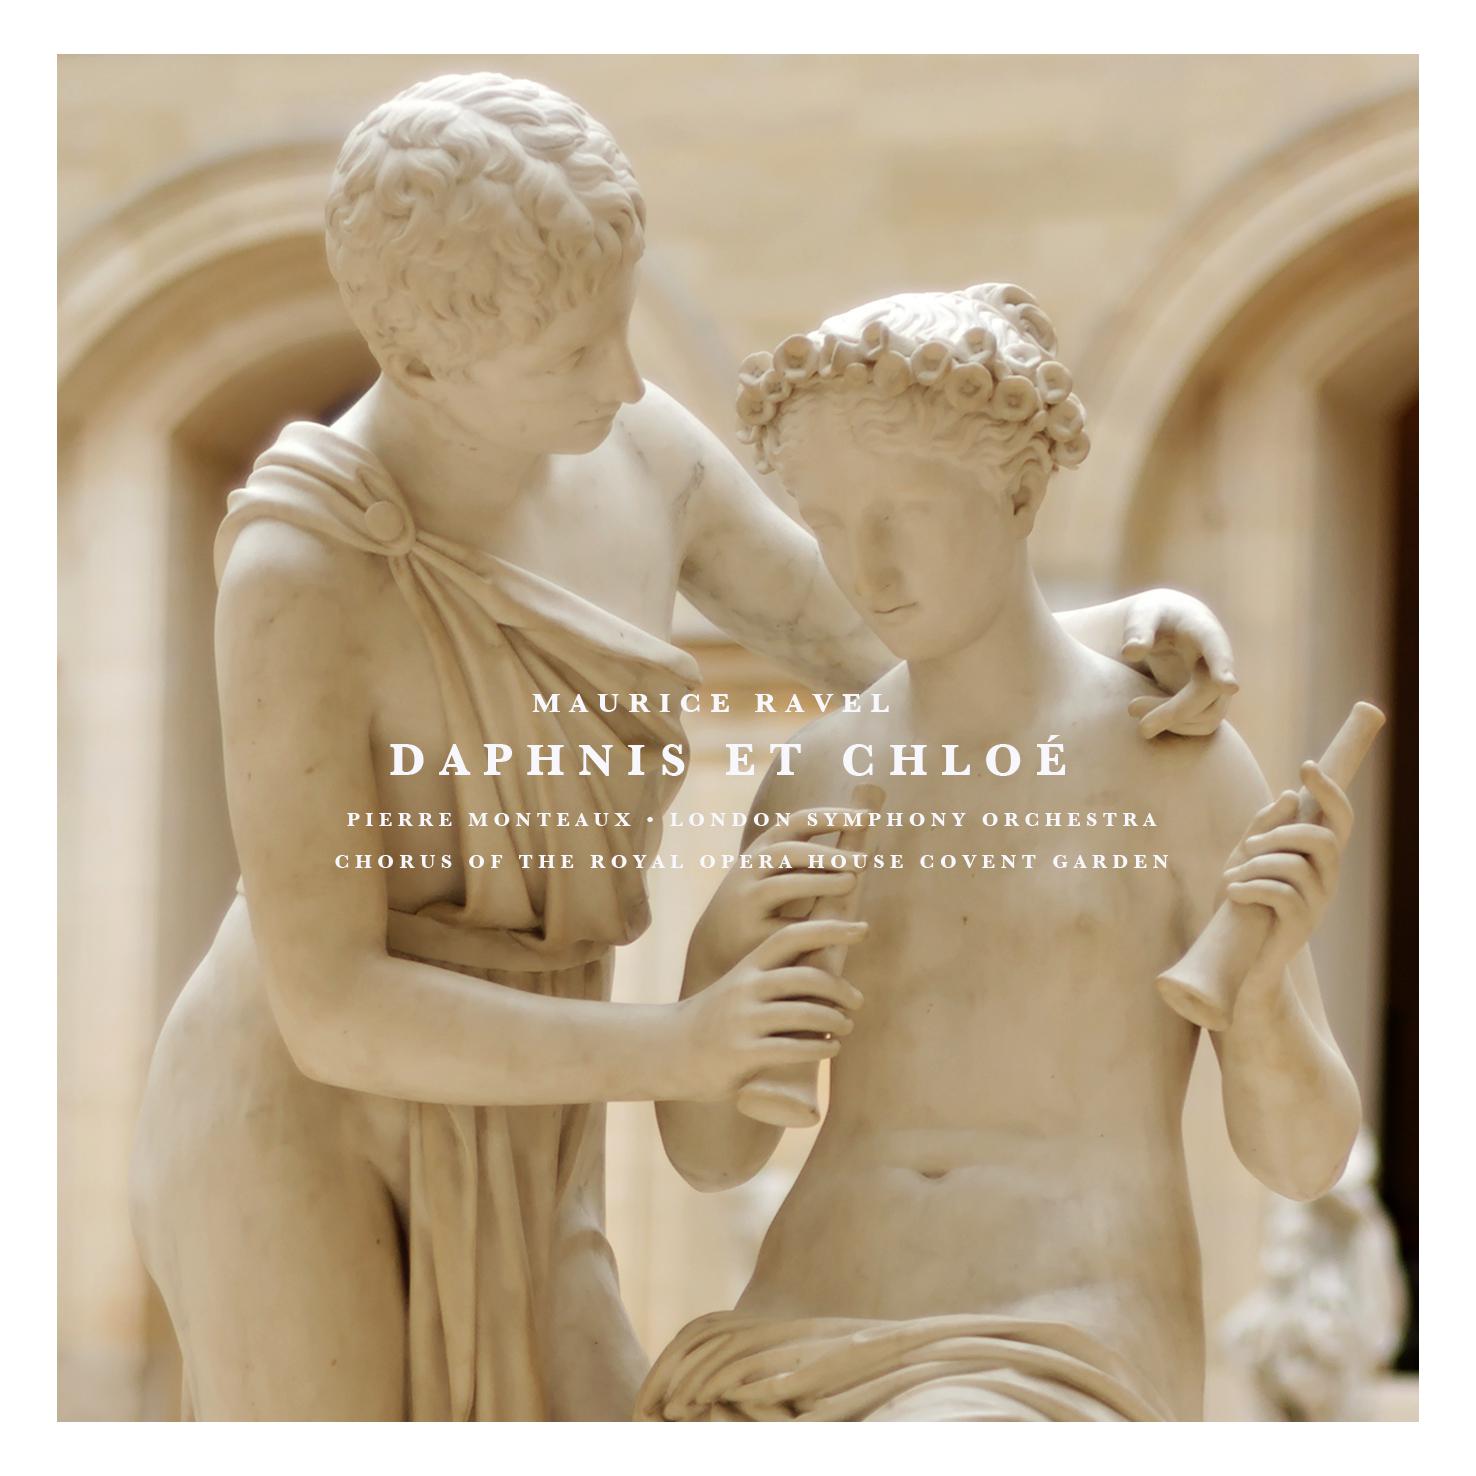 Daphnis Et Chloé: Part I "Danse légère et gracieuse de Daphnis"